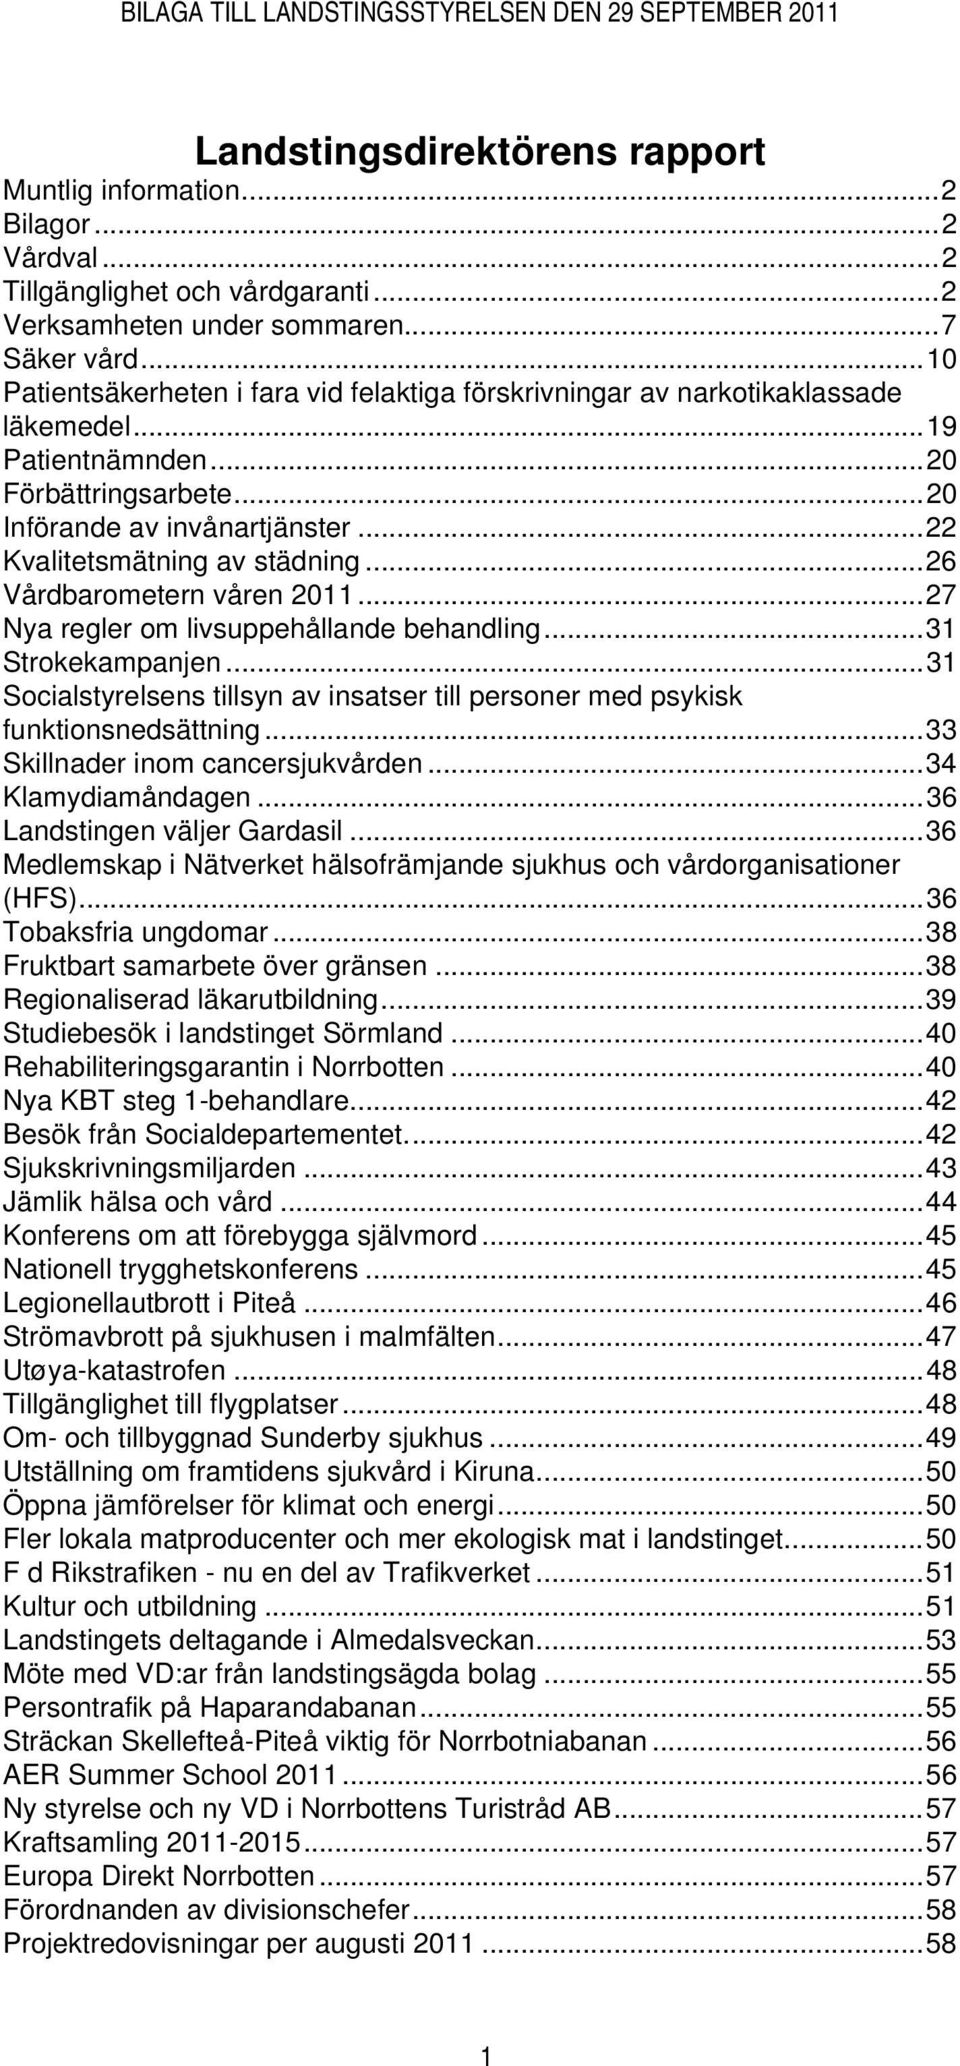 ..26 Vårdbarometern våren 2011...27 Nya regler om livsuppehållande behandling...31 Strokekampanjen...31 Socialstyrelsens tillsyn av insatser till personer med psykisk funktionsnedsättning.